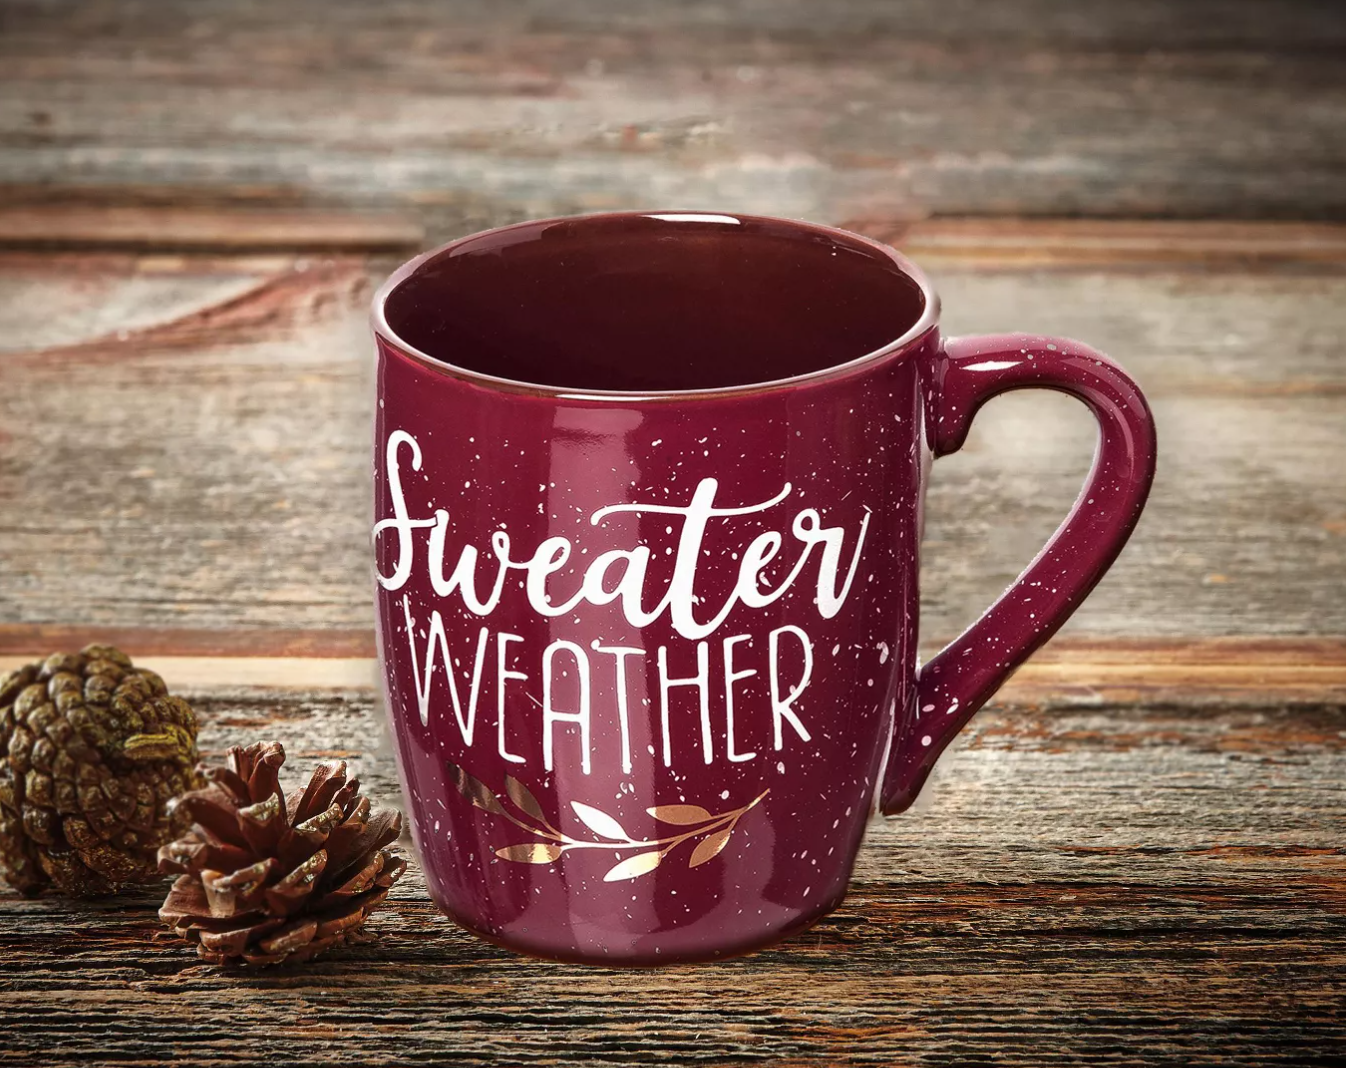 C & F Sweater Weather Mug